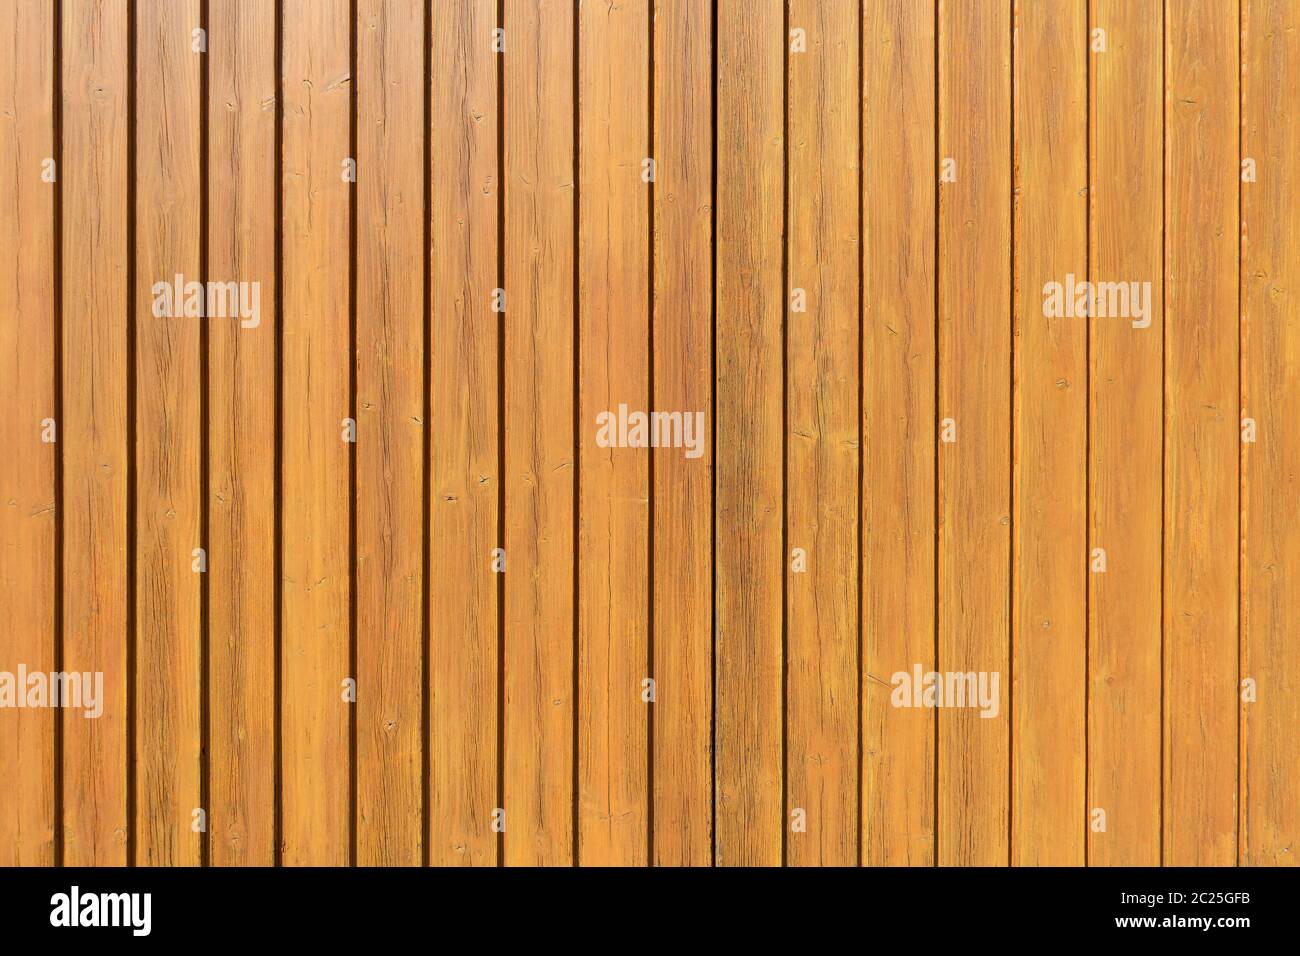 Détail d'un mur en bois de couleur miel en panneaux verticaux Banque D'Images